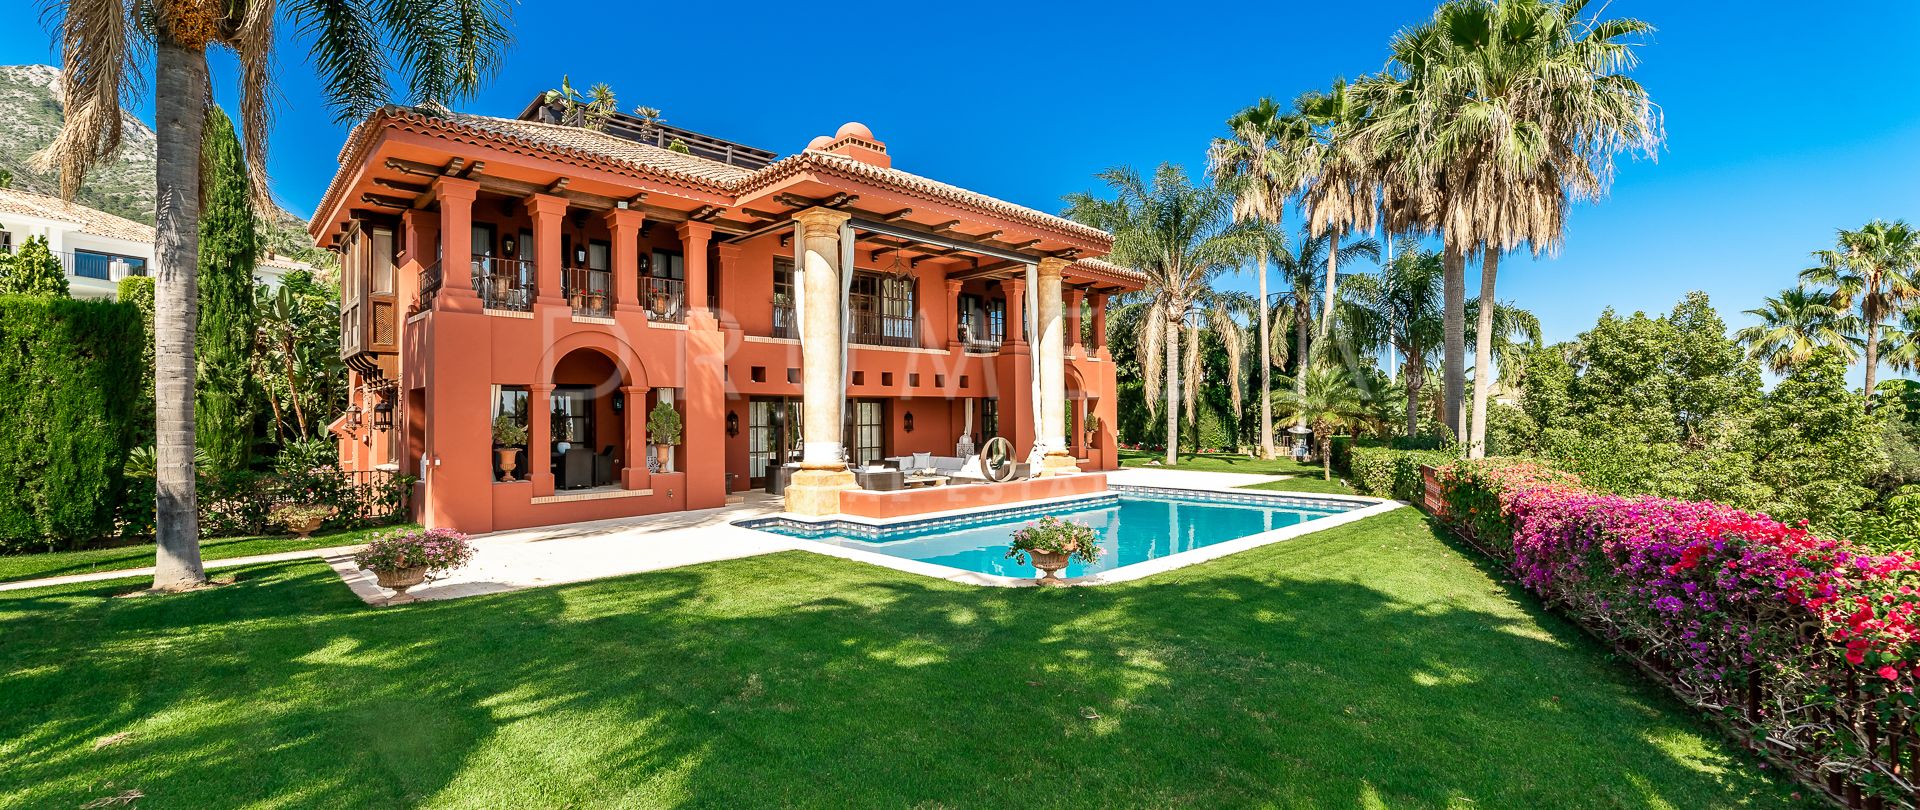 Espectacular gran villa de lujo con vistas panorámicas y factor sorpresa, Sierra Blanca, Milla de Oro de Marbella